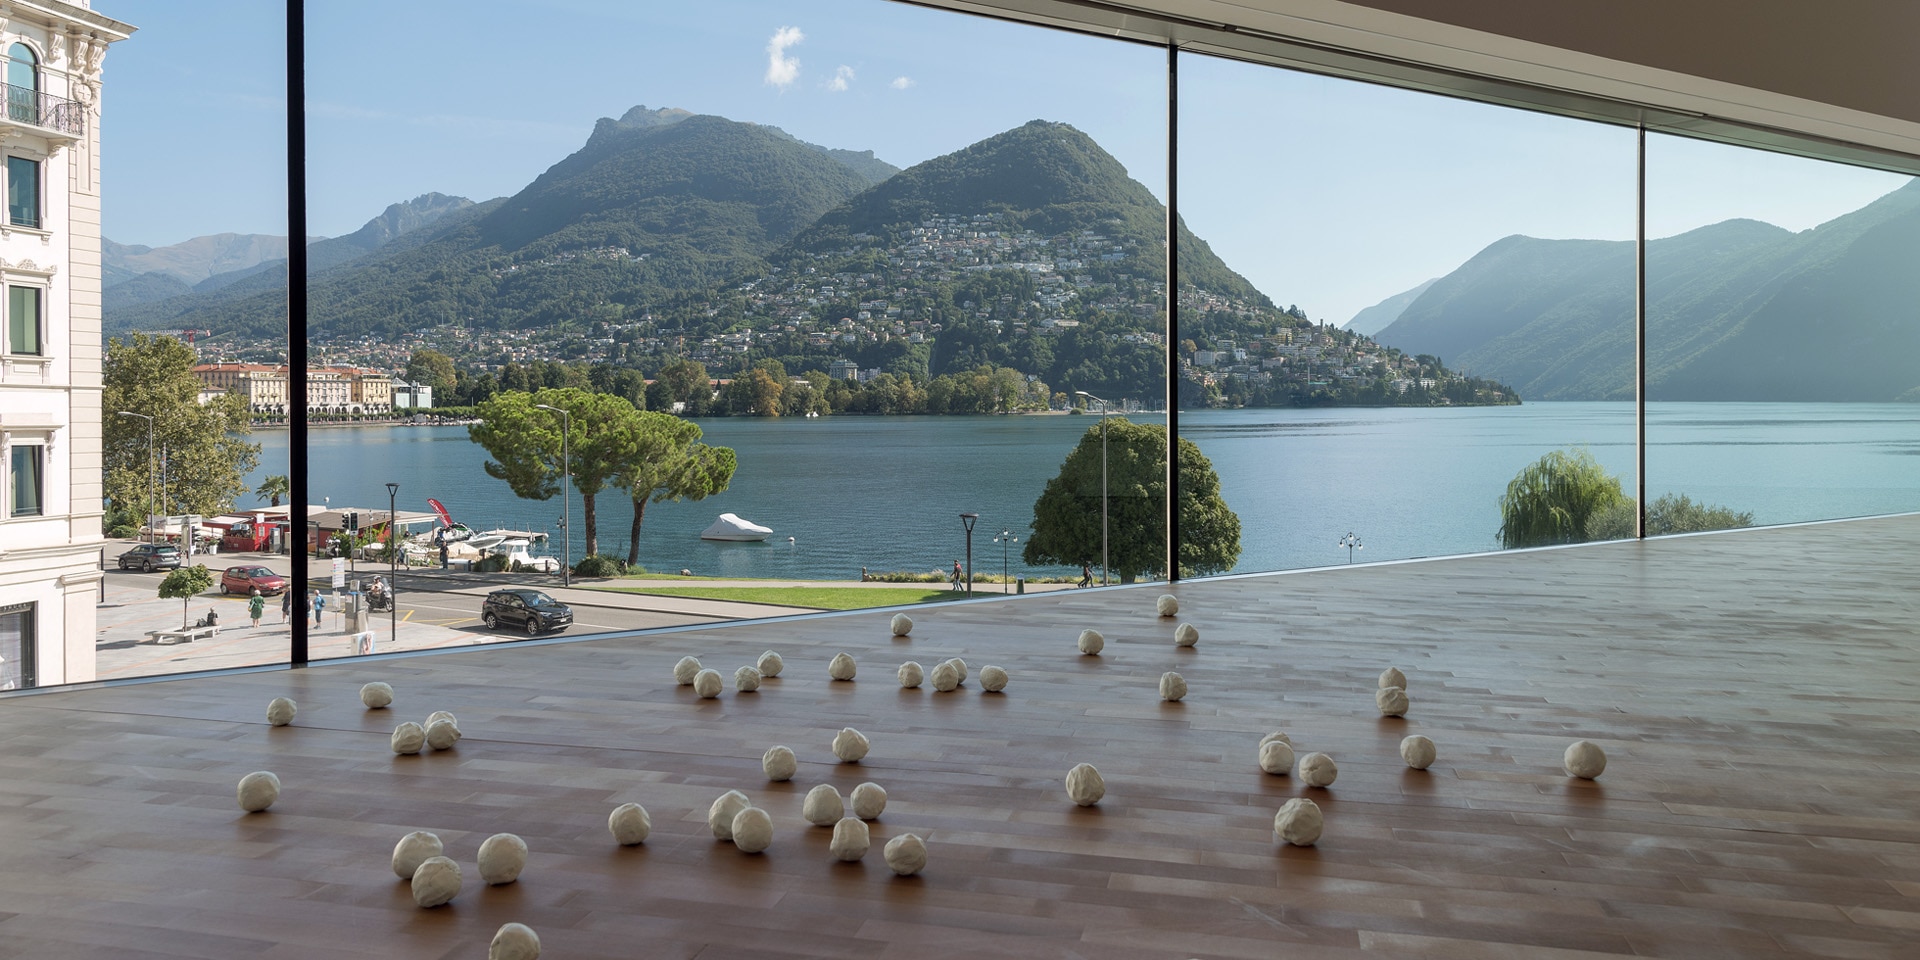  Une salle du centre culturel Lugano Arte e Cultura, avec vue sur le lac